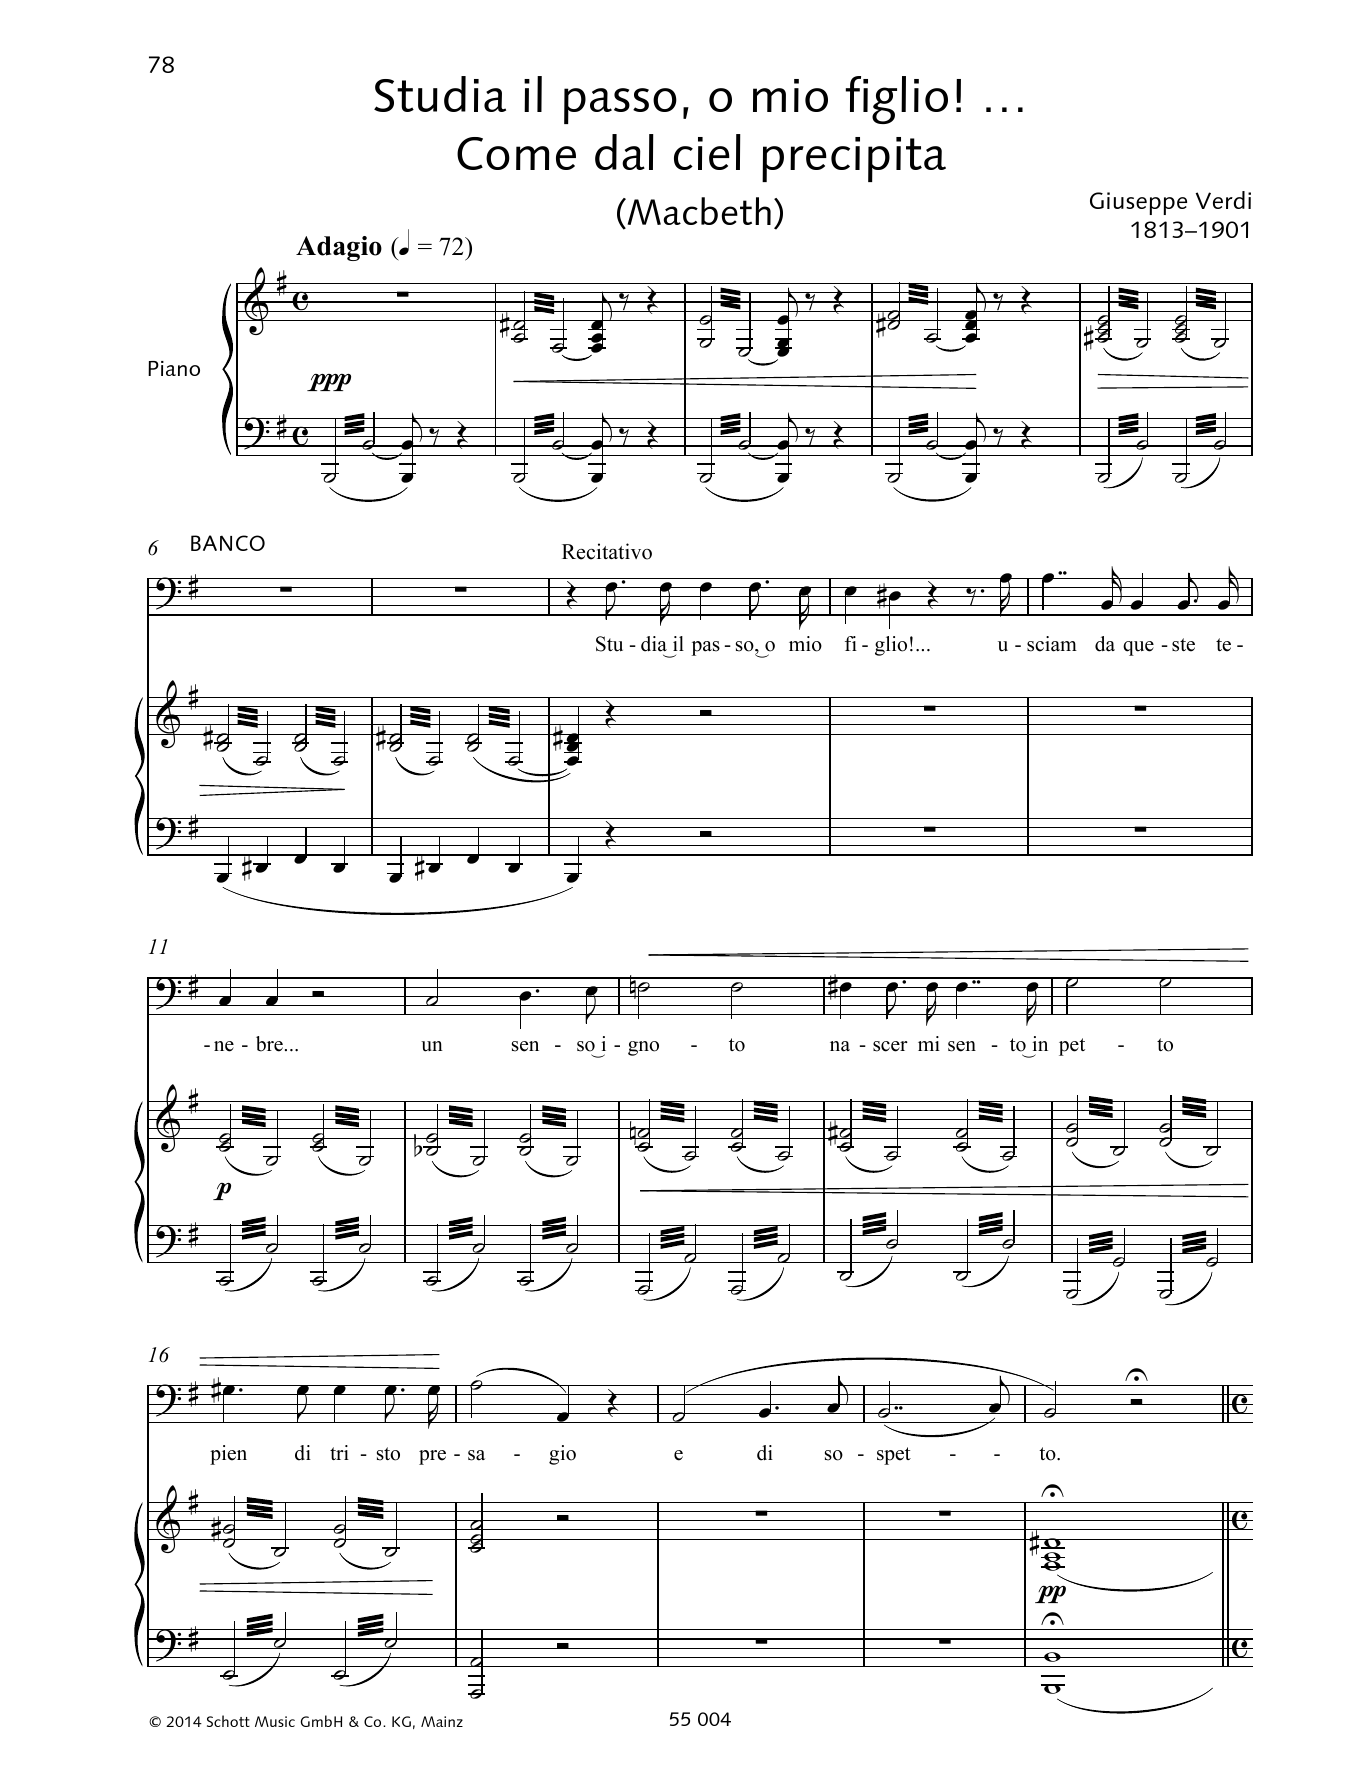 Giuseppe Verdi Studia il passo, o mio figlio!... Come dal ciel precipita sheet music notes and chords arranged for Piano & Vocal